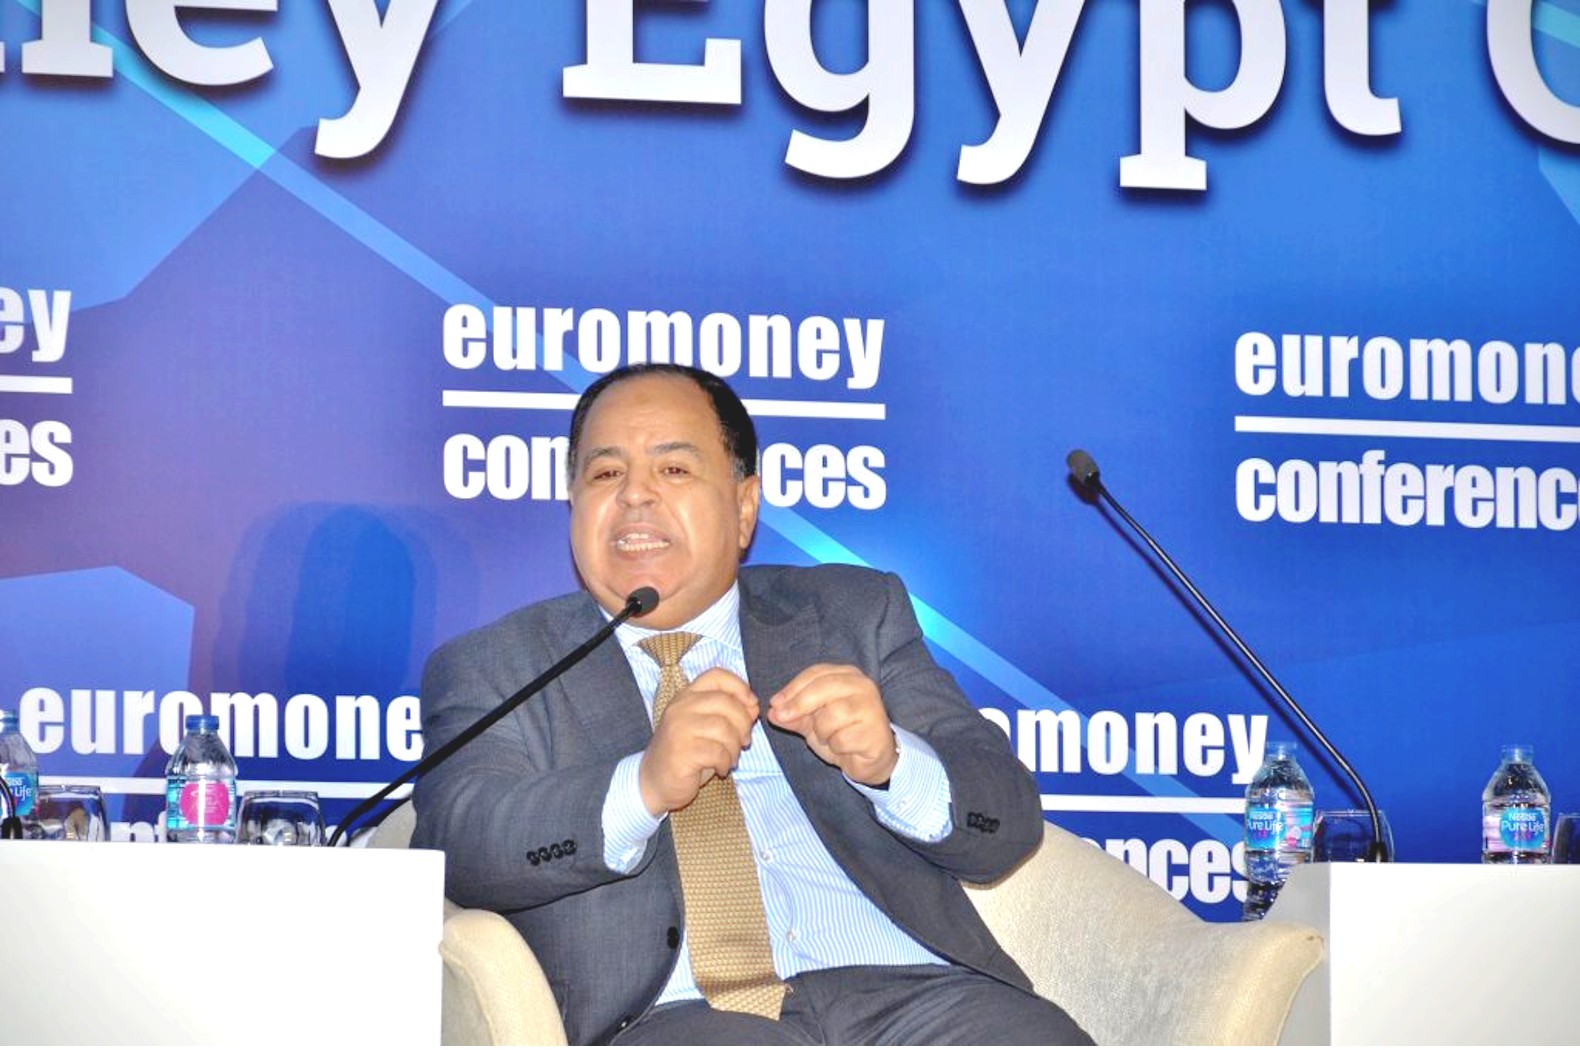 وزير المالية محمد معيط أثناء مشاركته في مؤتمر يوروميني (وكالات)